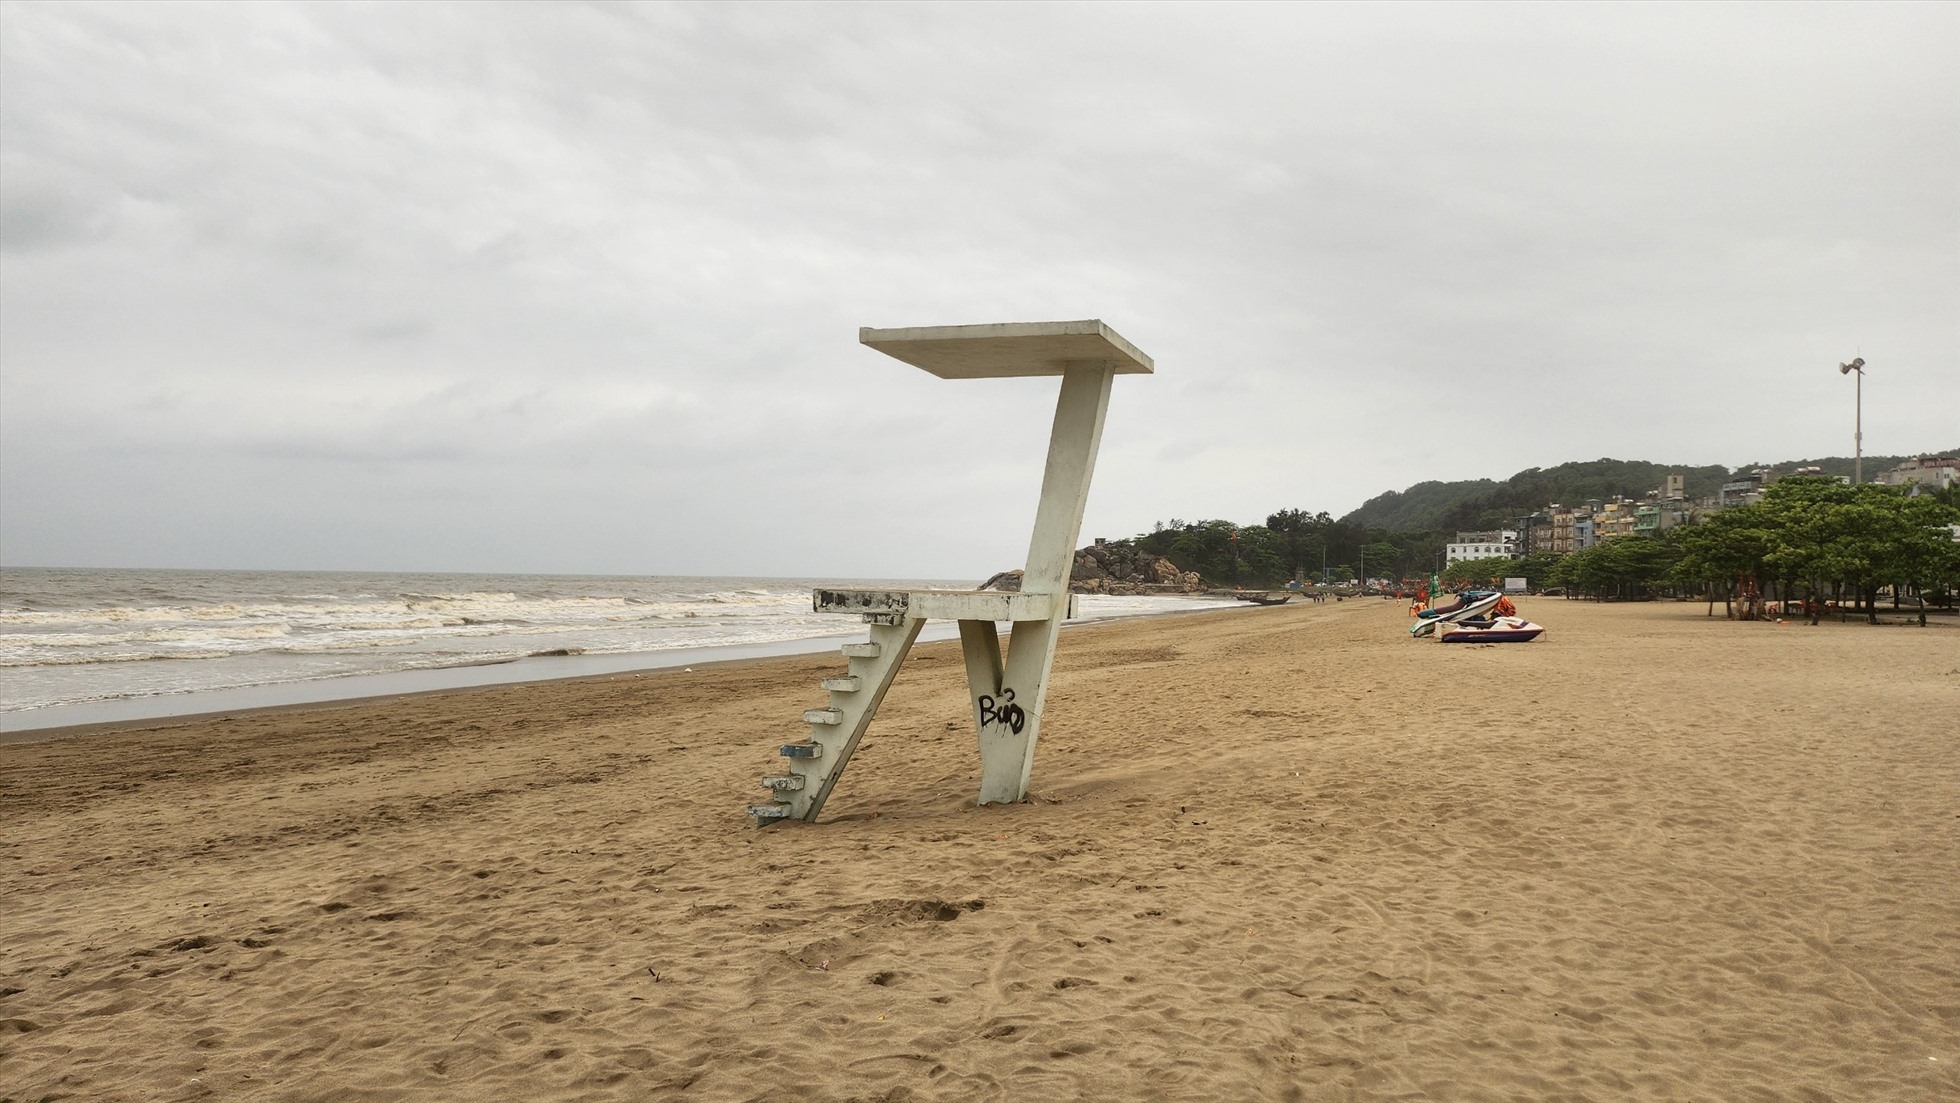 Chòi canh gác tại bãi biển Sầm Sơn (TP. Sầm Sơn, tỉnh Thanh Hóa). Ảnh: Quách Du